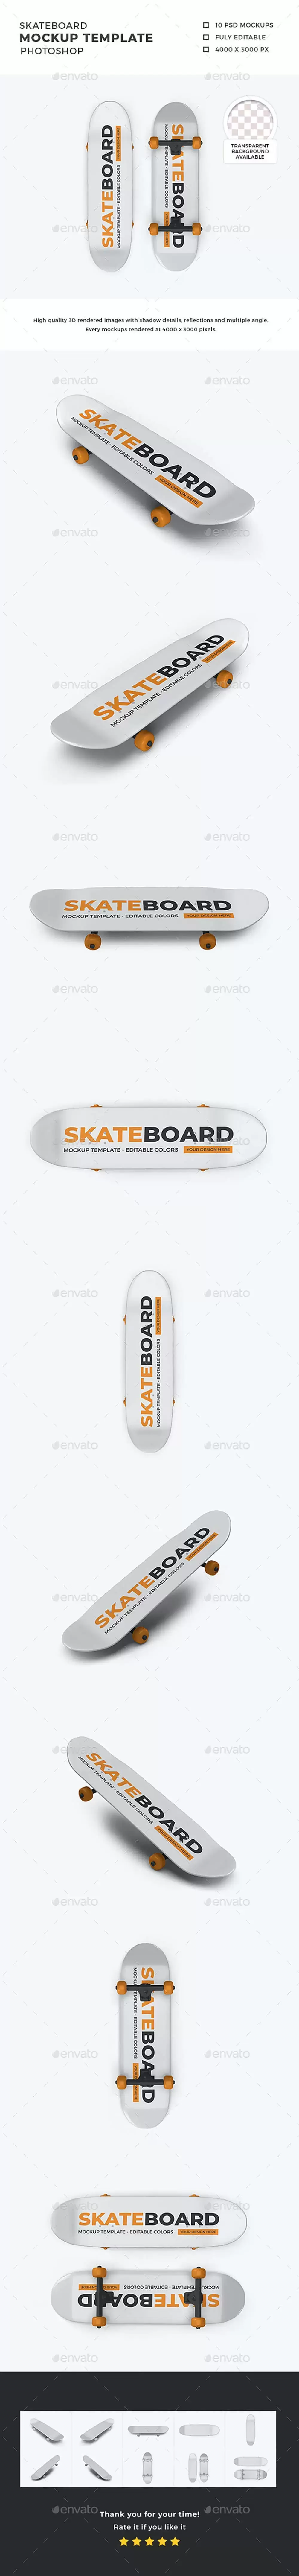 滑板品牌设计展示样机模板集 (psd)免费下载